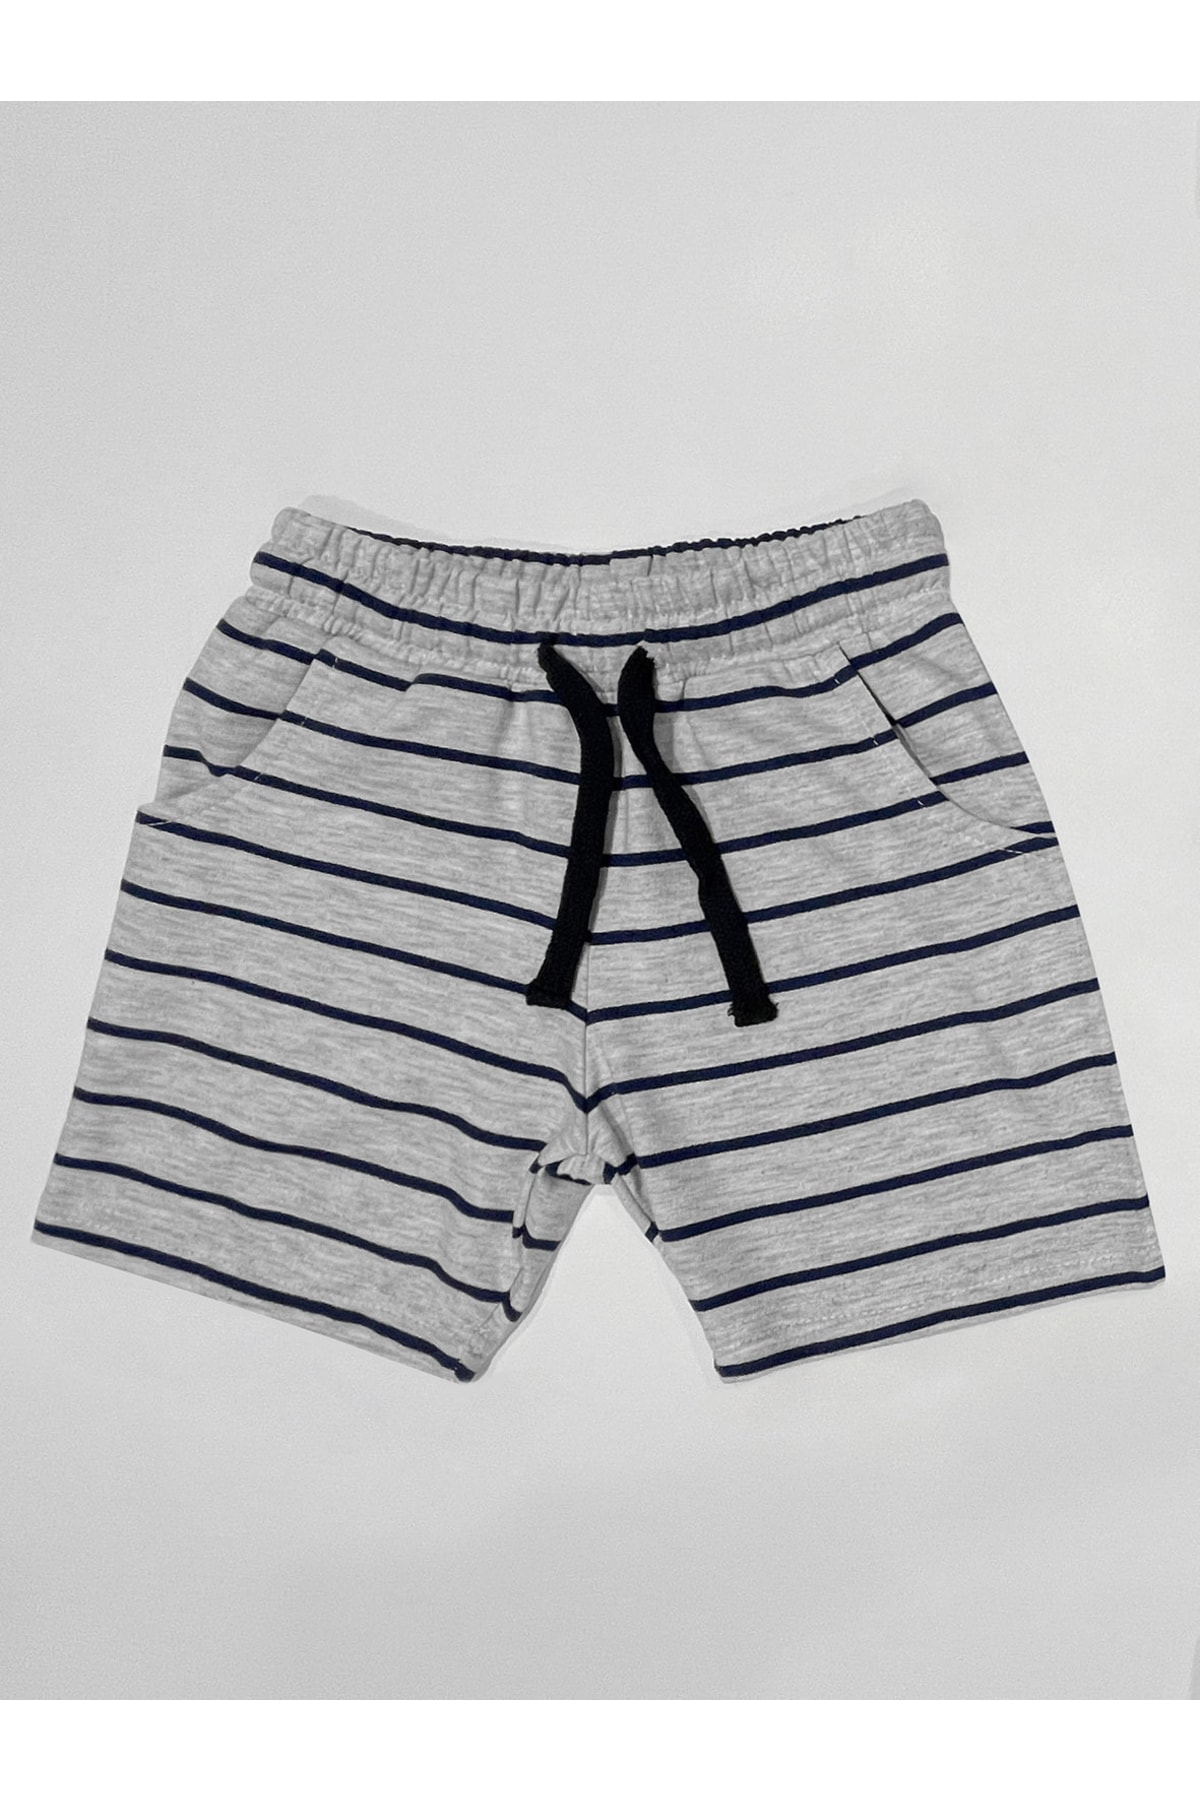 Levně Denokids Basic Boys' Striped Gray Shorts